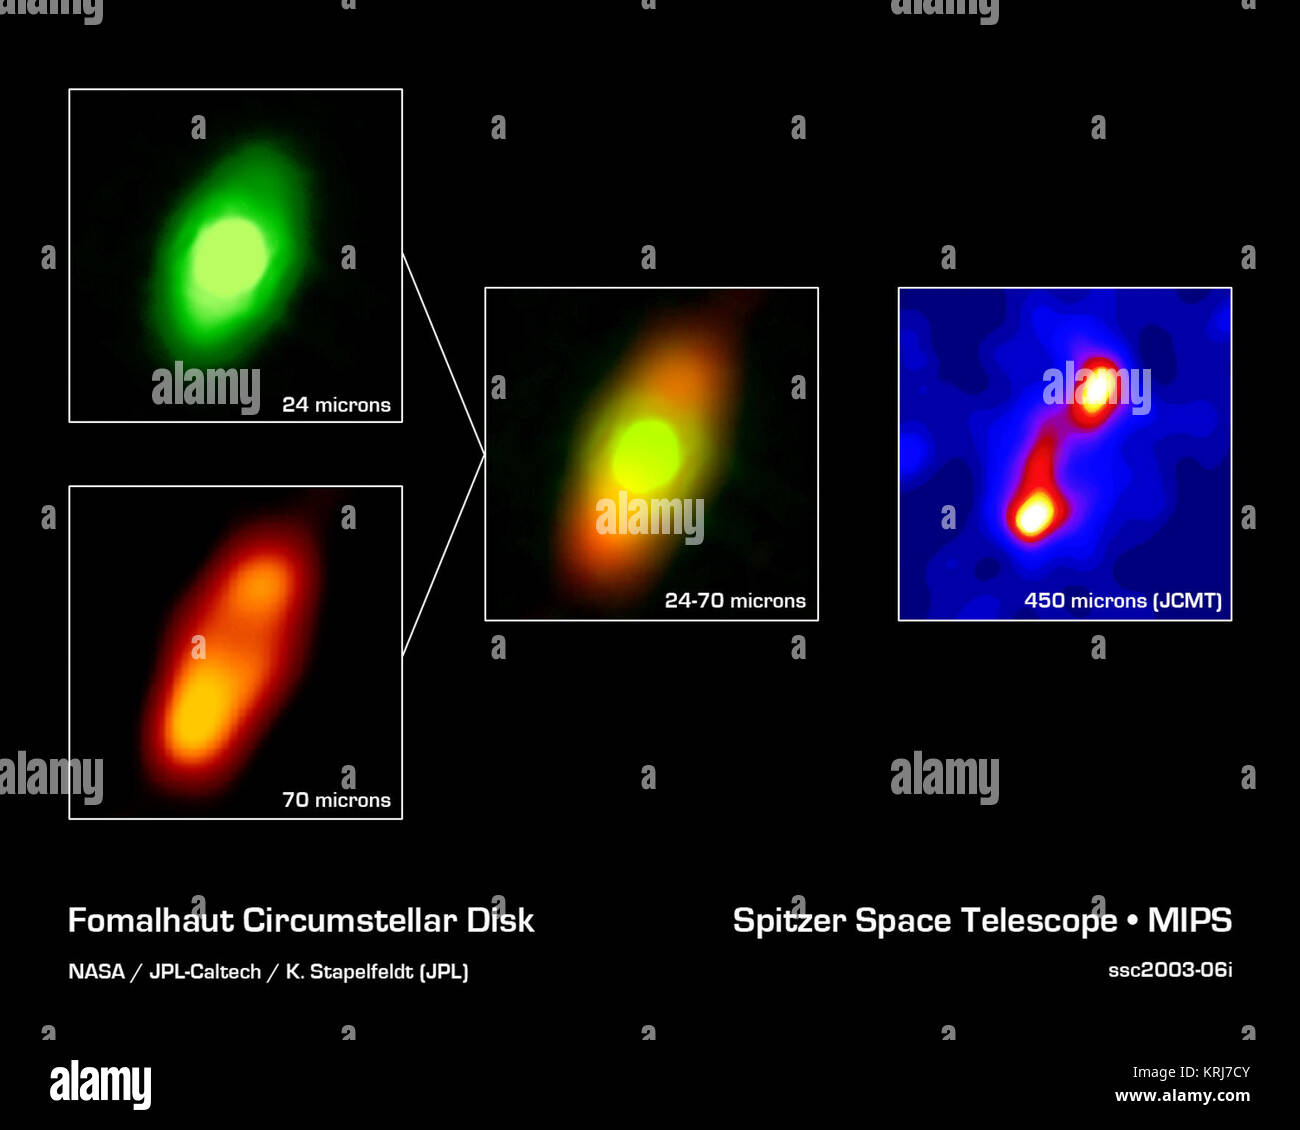 La NASA il telescopio spaziale Spitzer ha ottenuto le prime immagini a infrarossi del disco di polvere che circonda Fomalhaut, la diciottesima stella più brillante nel cielo. I pianeti sono creduti per formare da un tale disco appiattito-come la nube di gas e polvere in orbita intorno a una stella molto presto nella sua vita. Il telescopio Spitzer è stato progettato in parte per lo studio di questi dischi circumstellare, dove le particelle di polvere vengono così freddo che si irradiano principalmente a lunghezze d'onda infrarosse. Si trova nella costellazione Piscis Austrinus, la stella madre e il suo presunto sistema planetario si trovano ad una distanza di 25 anni-luce. Venti anni fa, t Foto Stock